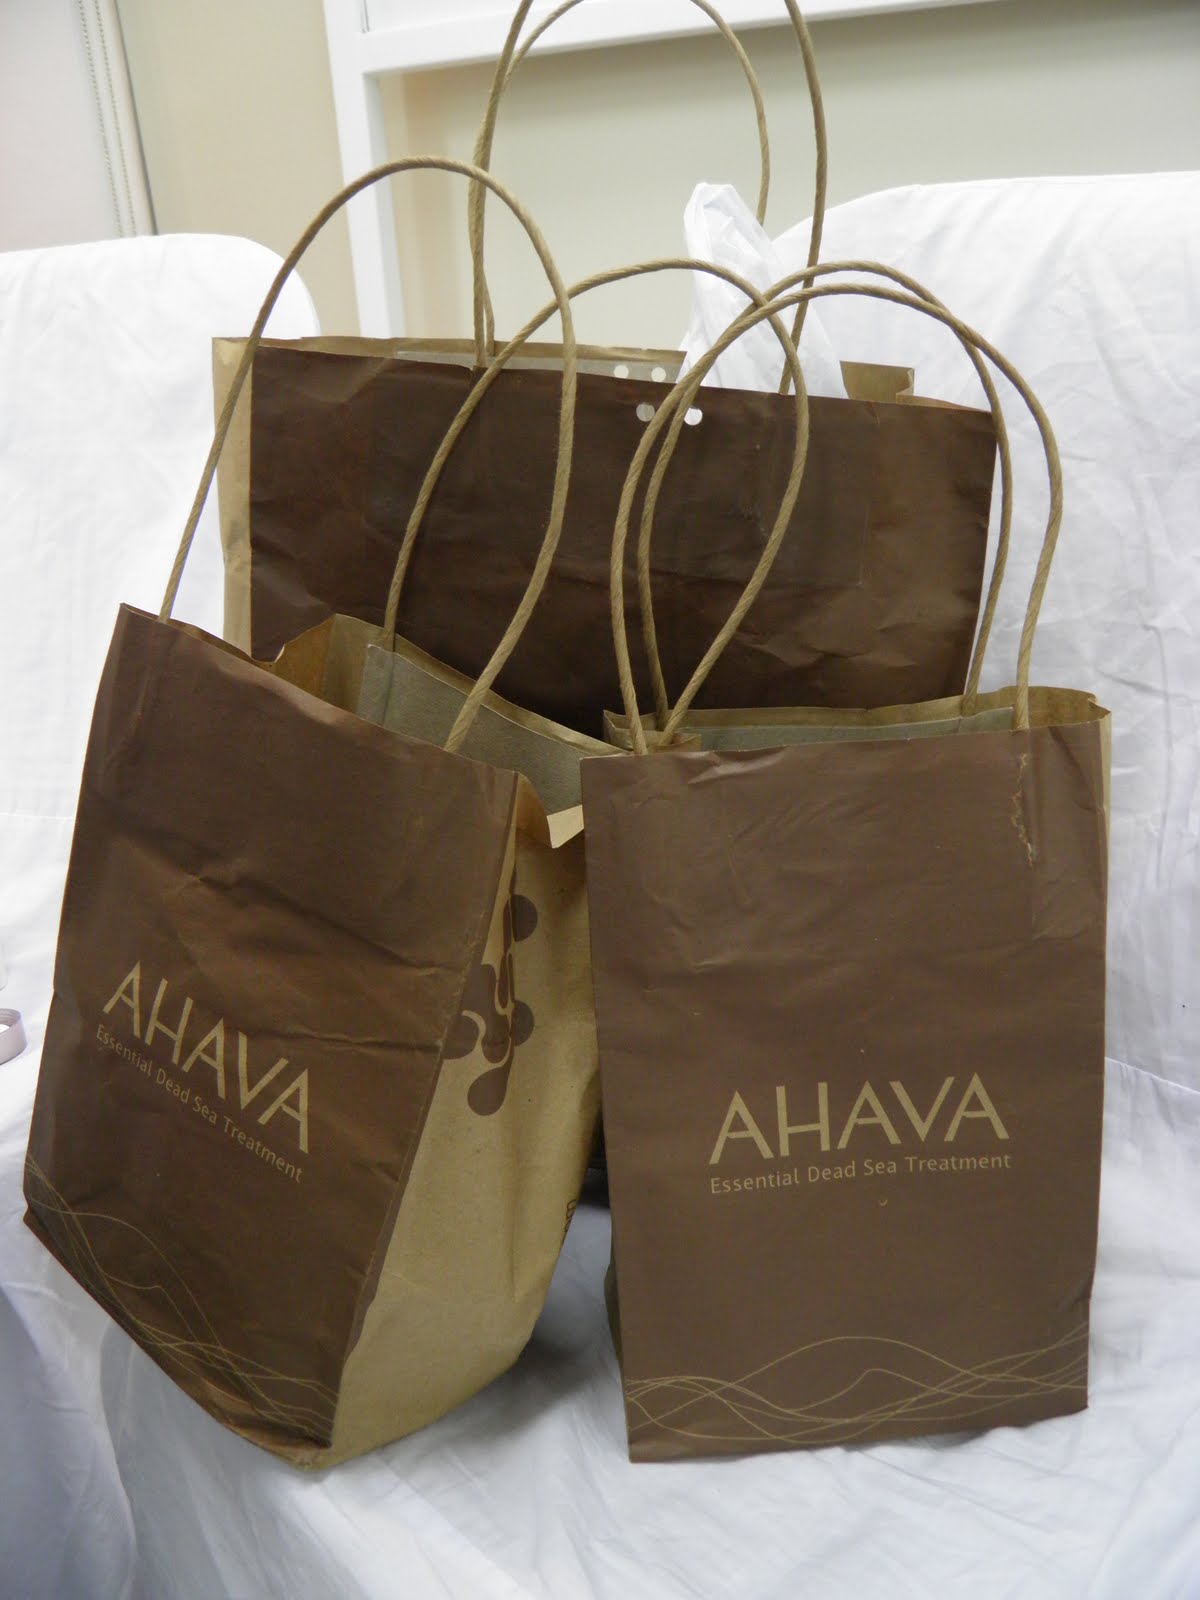 You can go to www.ahava.com.au